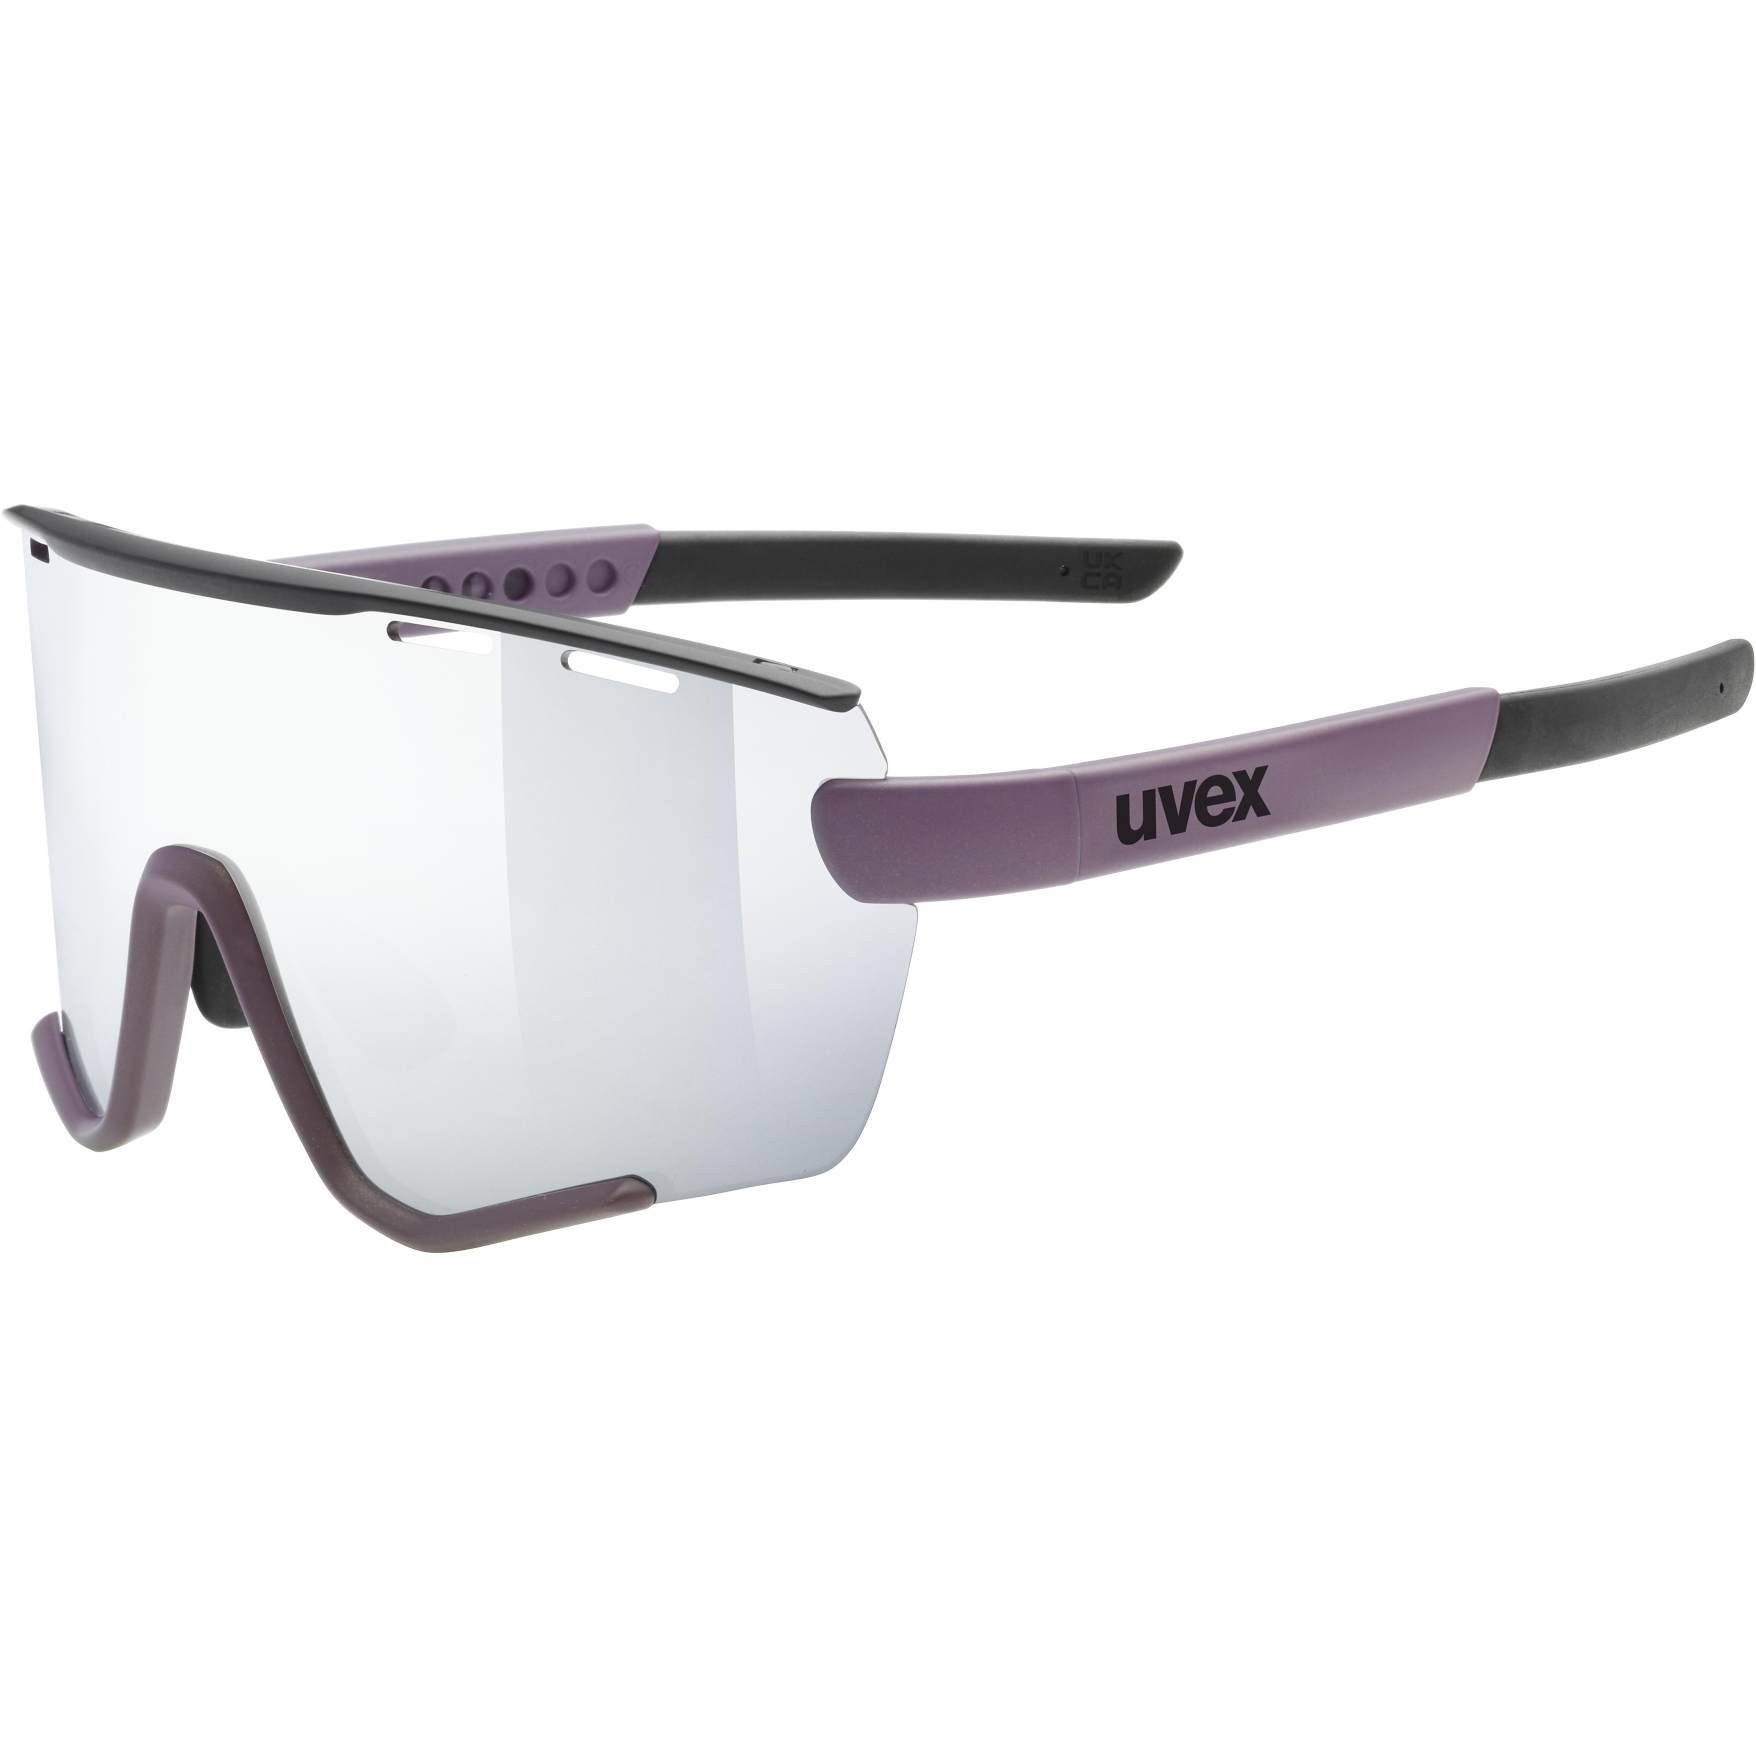 Bild von Uvex sportstyle 236 small Set Brille - plum black matt/mirror silver + clear